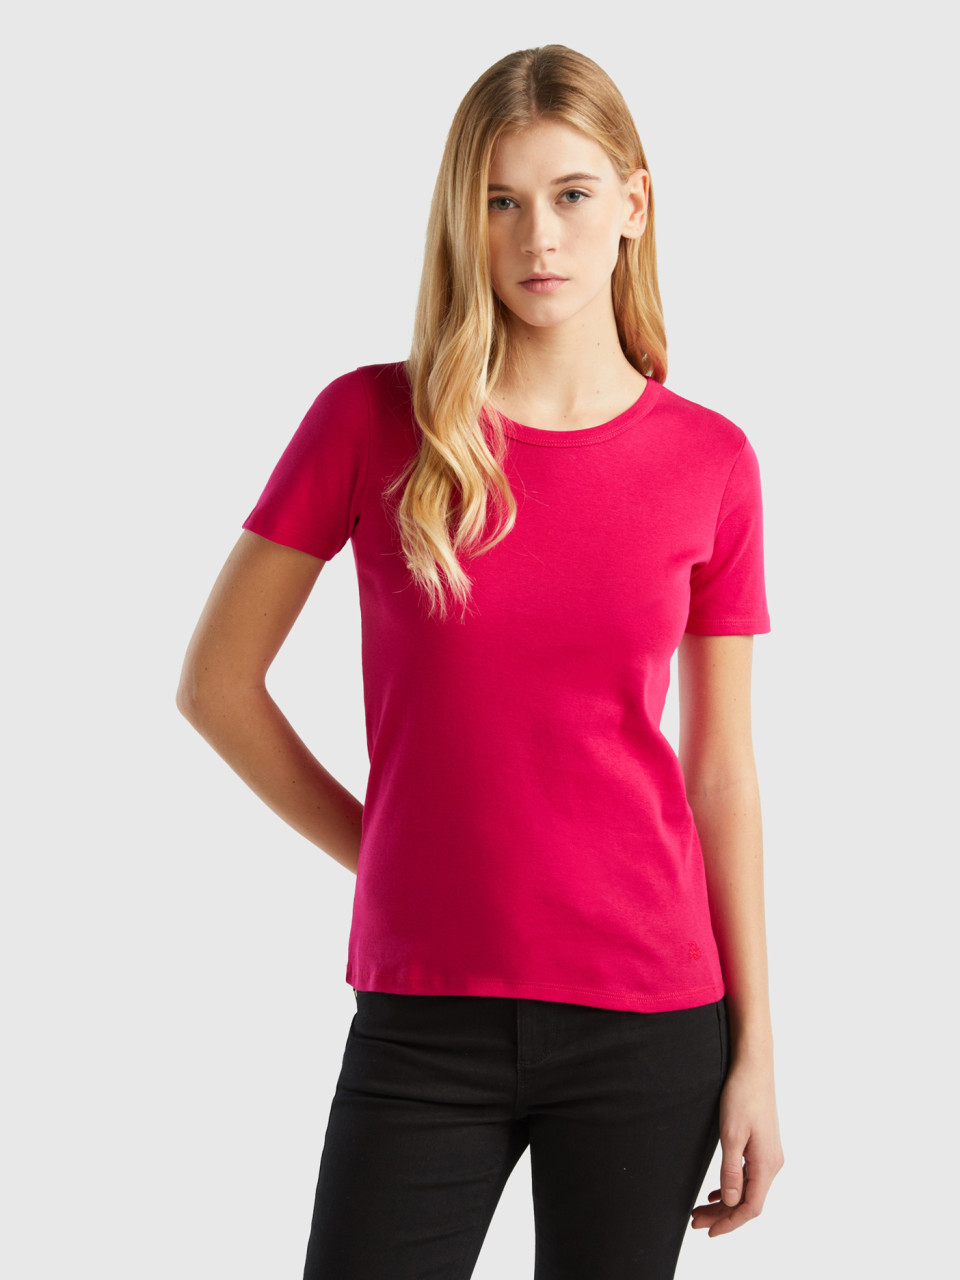 Benetton, Long Fiber Cotton T-shirt, Cyclamen, Women